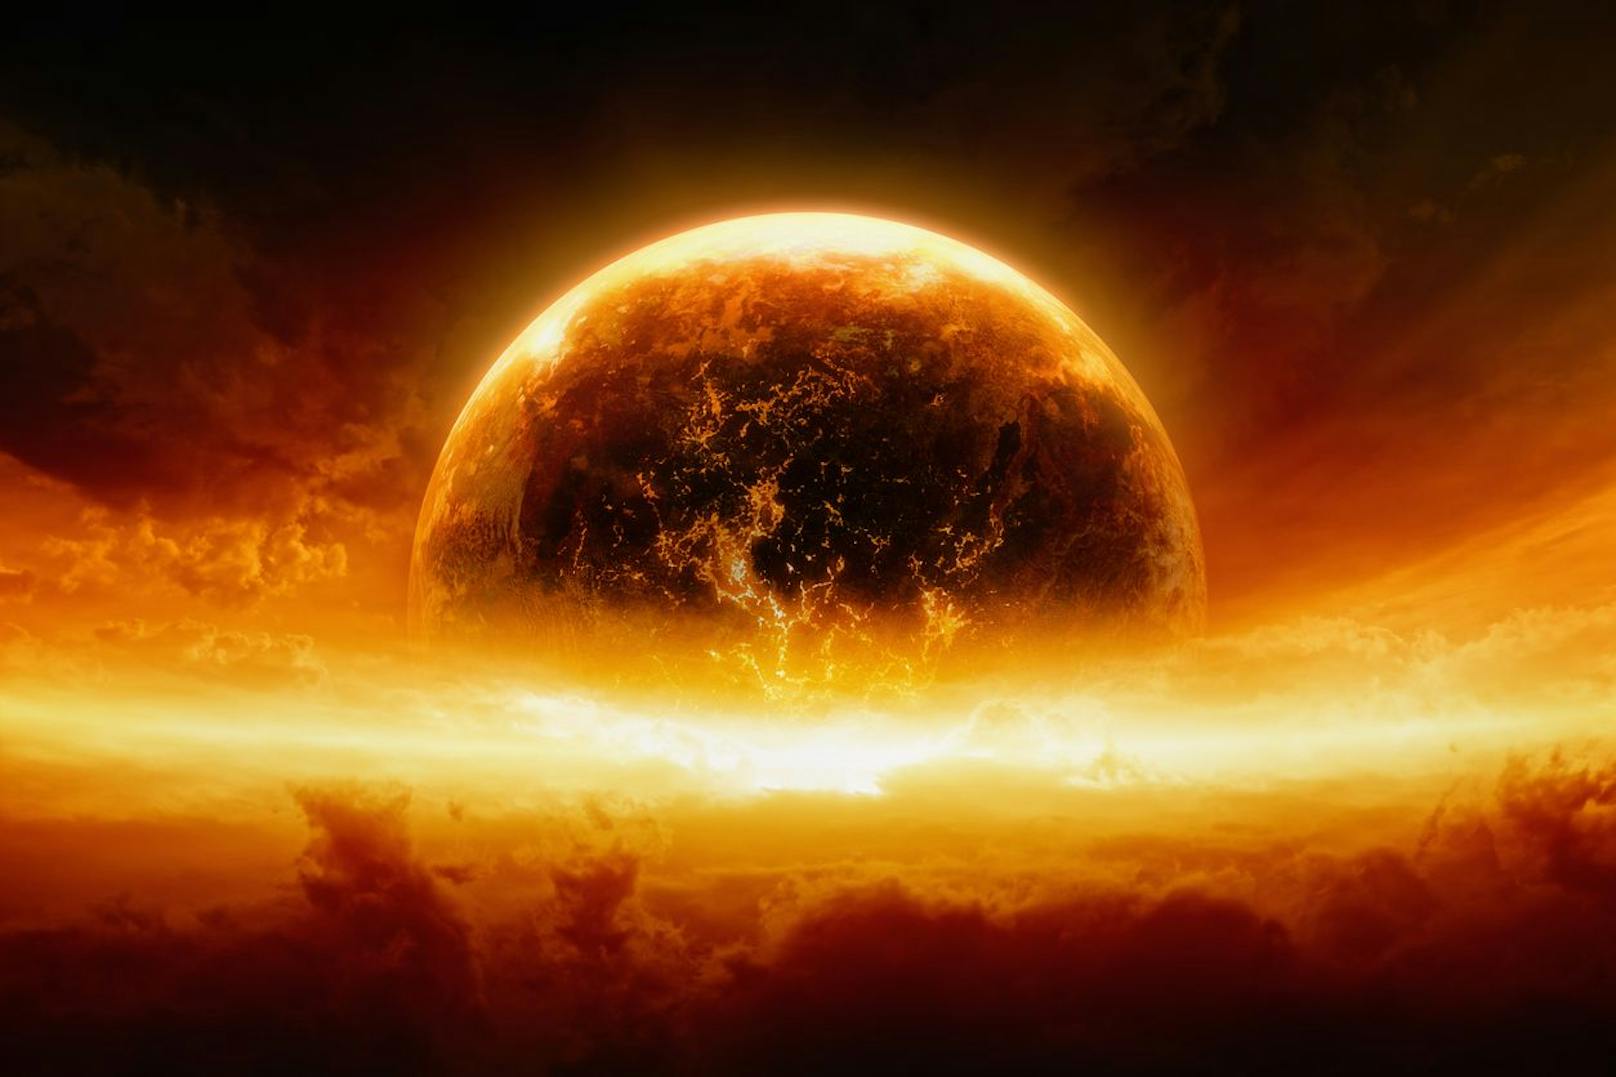 Gesetzt dem Fall, es würde wirklich zu einer nuklearen Apokalypse kommen – gäbe es auf dieser Erde einen Ort, wo die Menschheit weiter bestehen könnte? Wo wäre er?